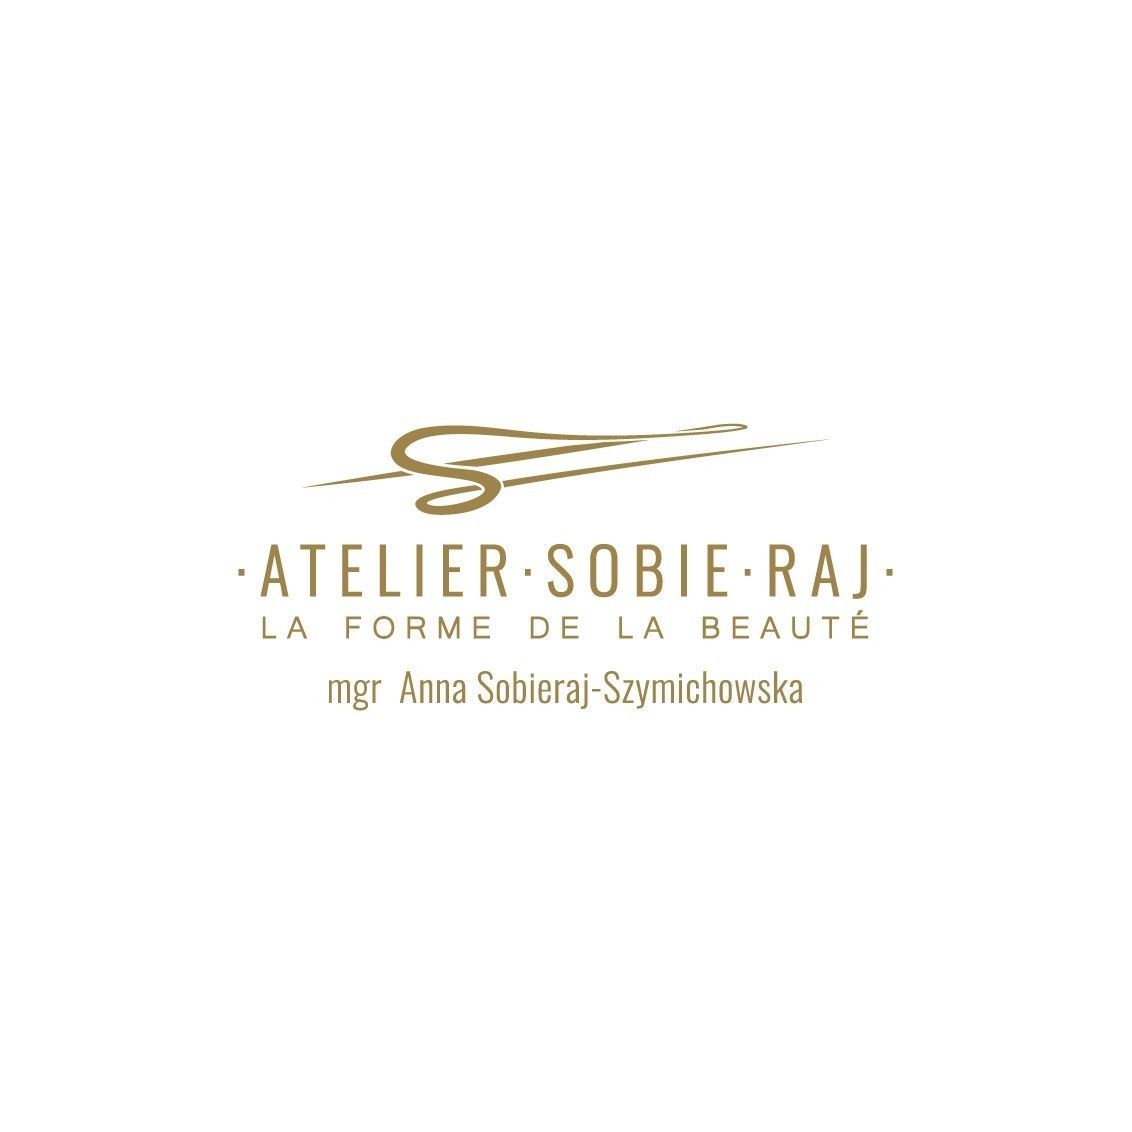 Atelier Sobie-Raj, Budapesztańska 5, 1, 80-288, Gdańsk